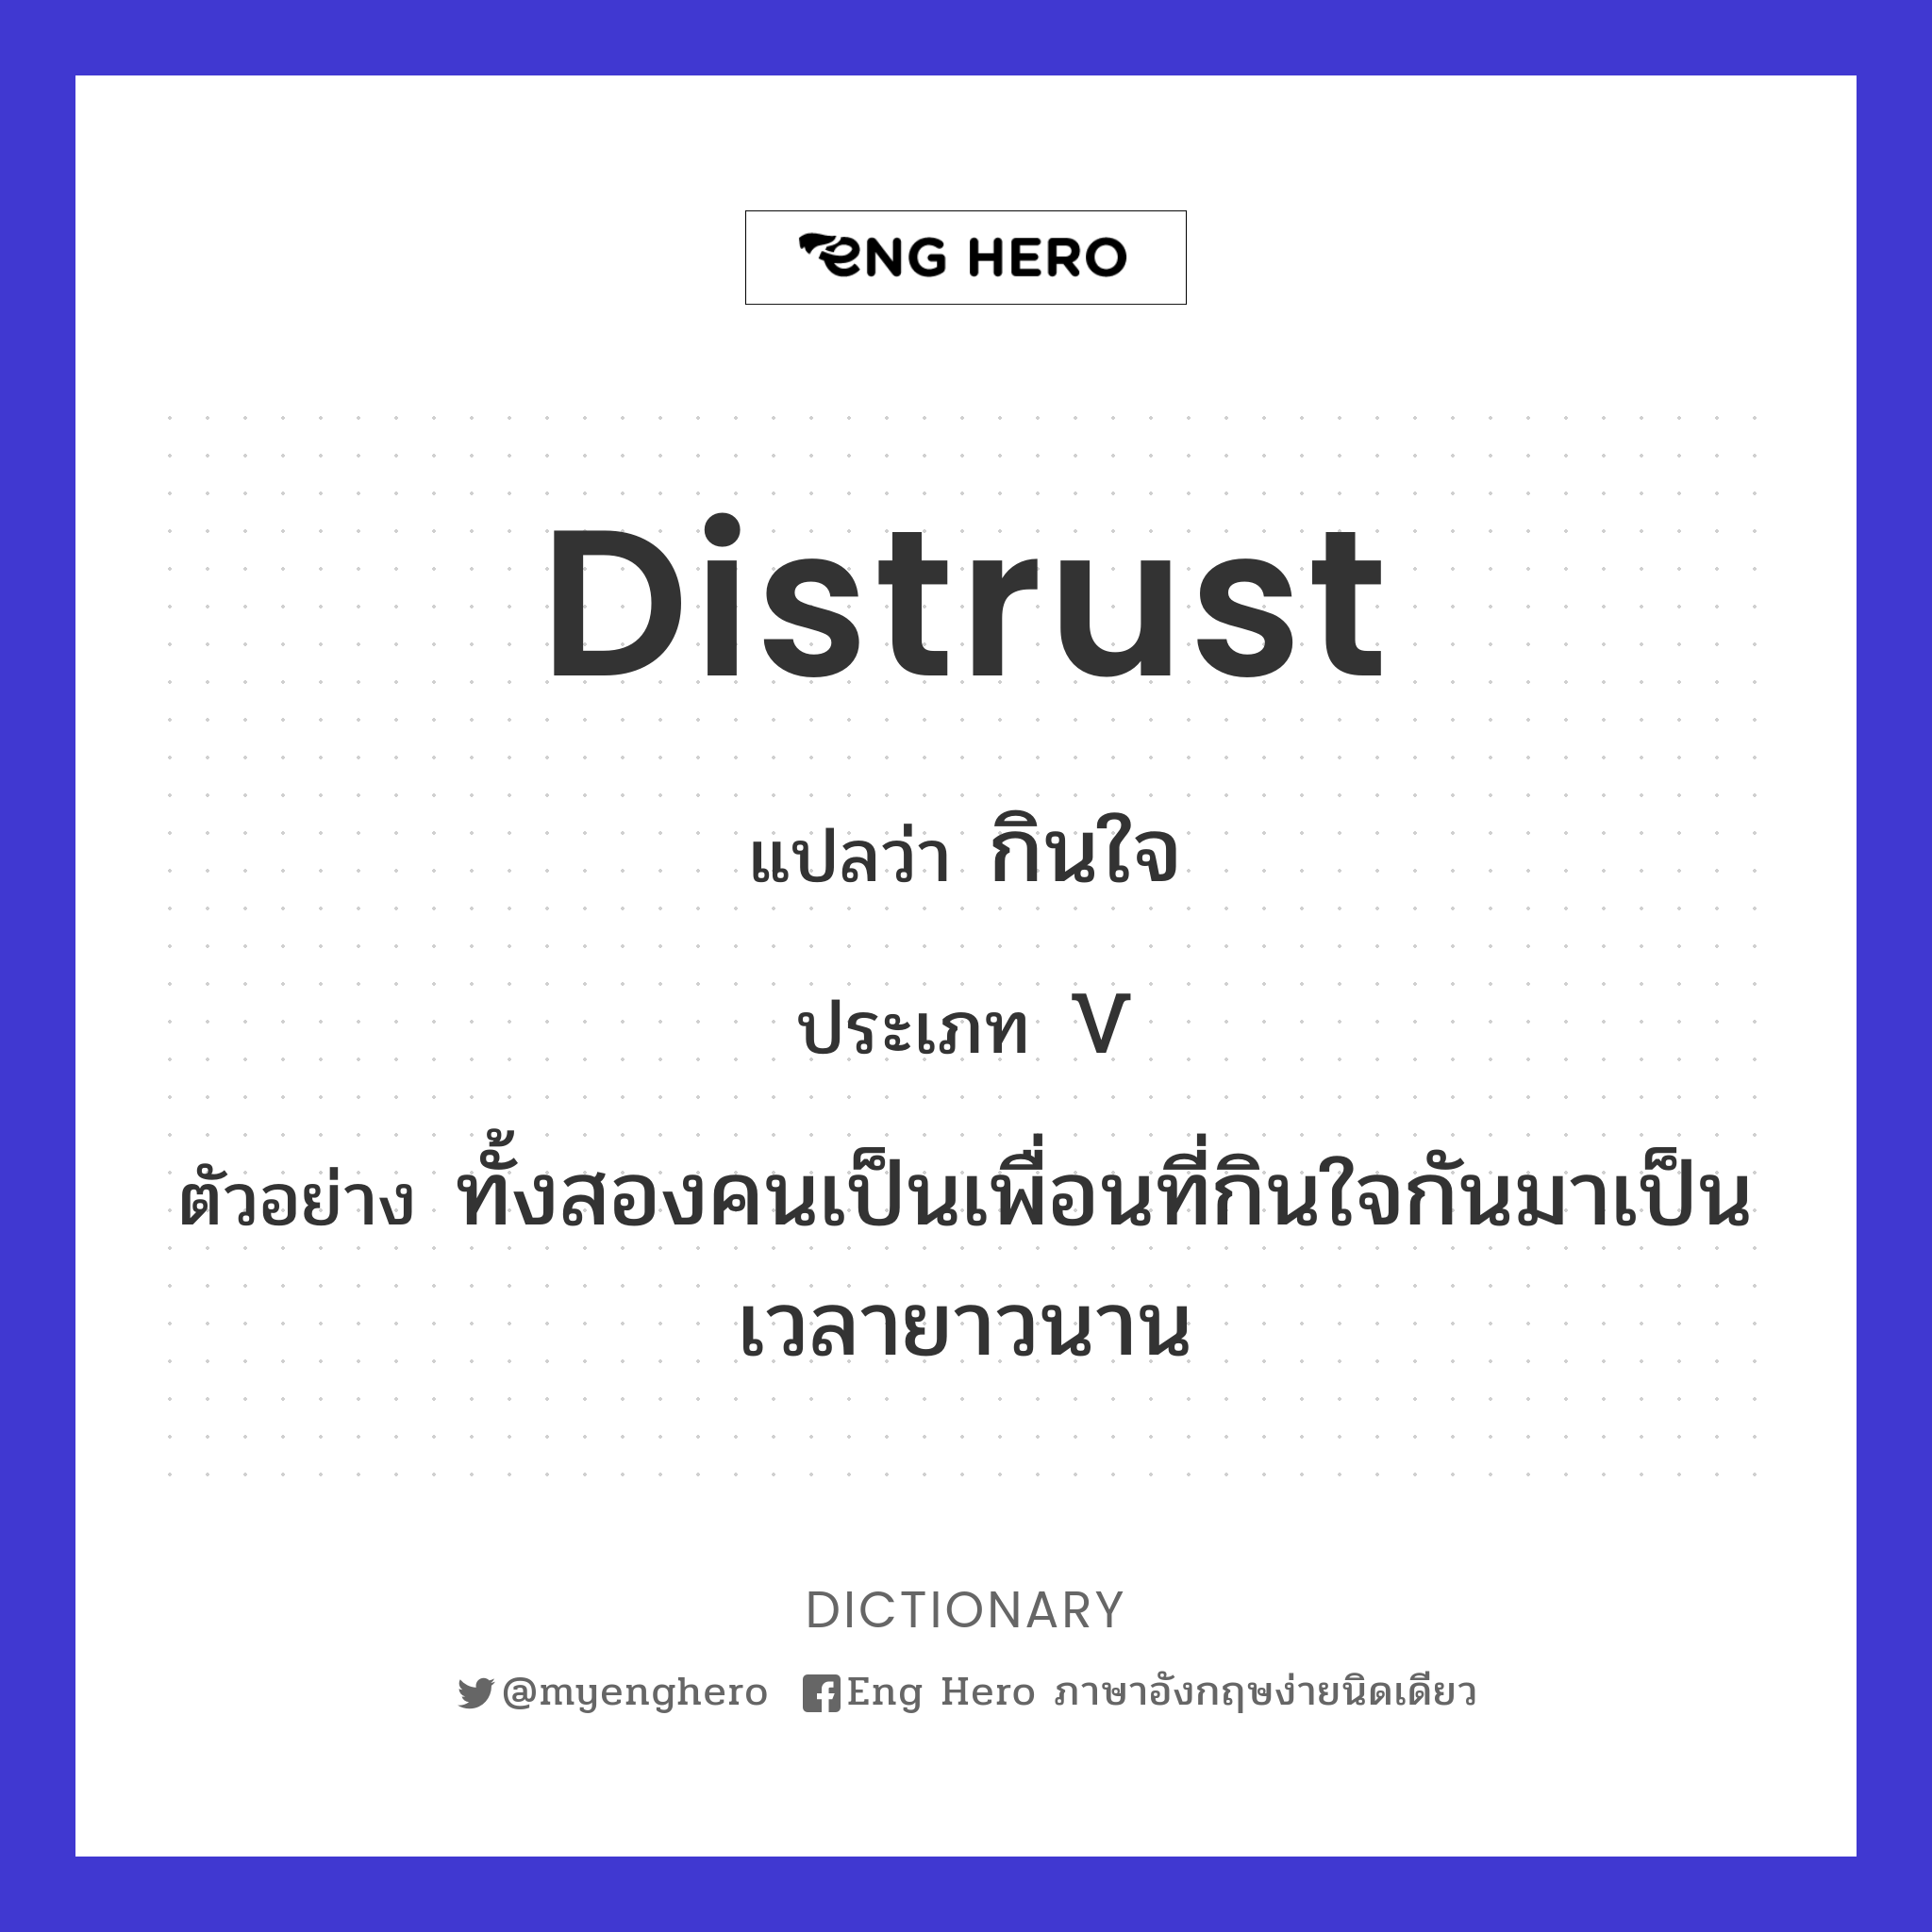 distrust